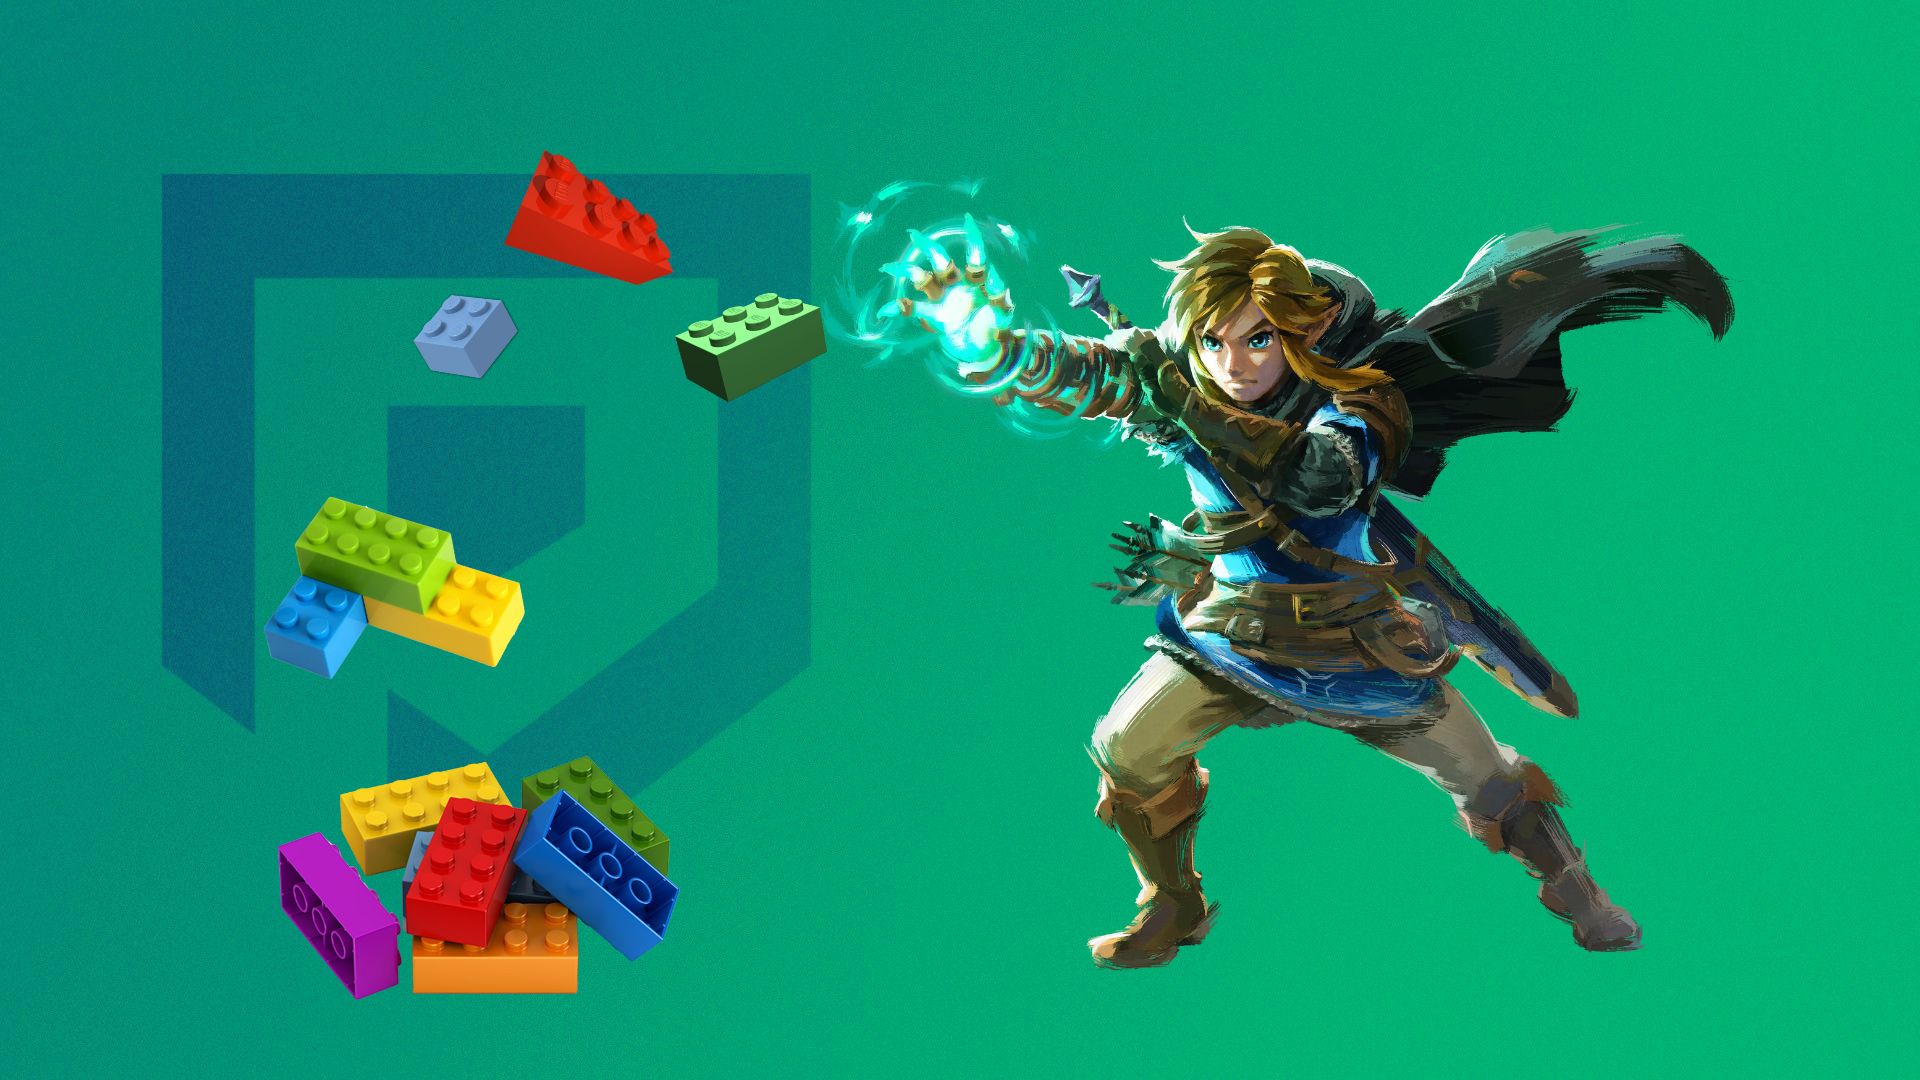 Unlocking HYRULE in Bricks: Legend of Zelda Lego Sets REVEALED!